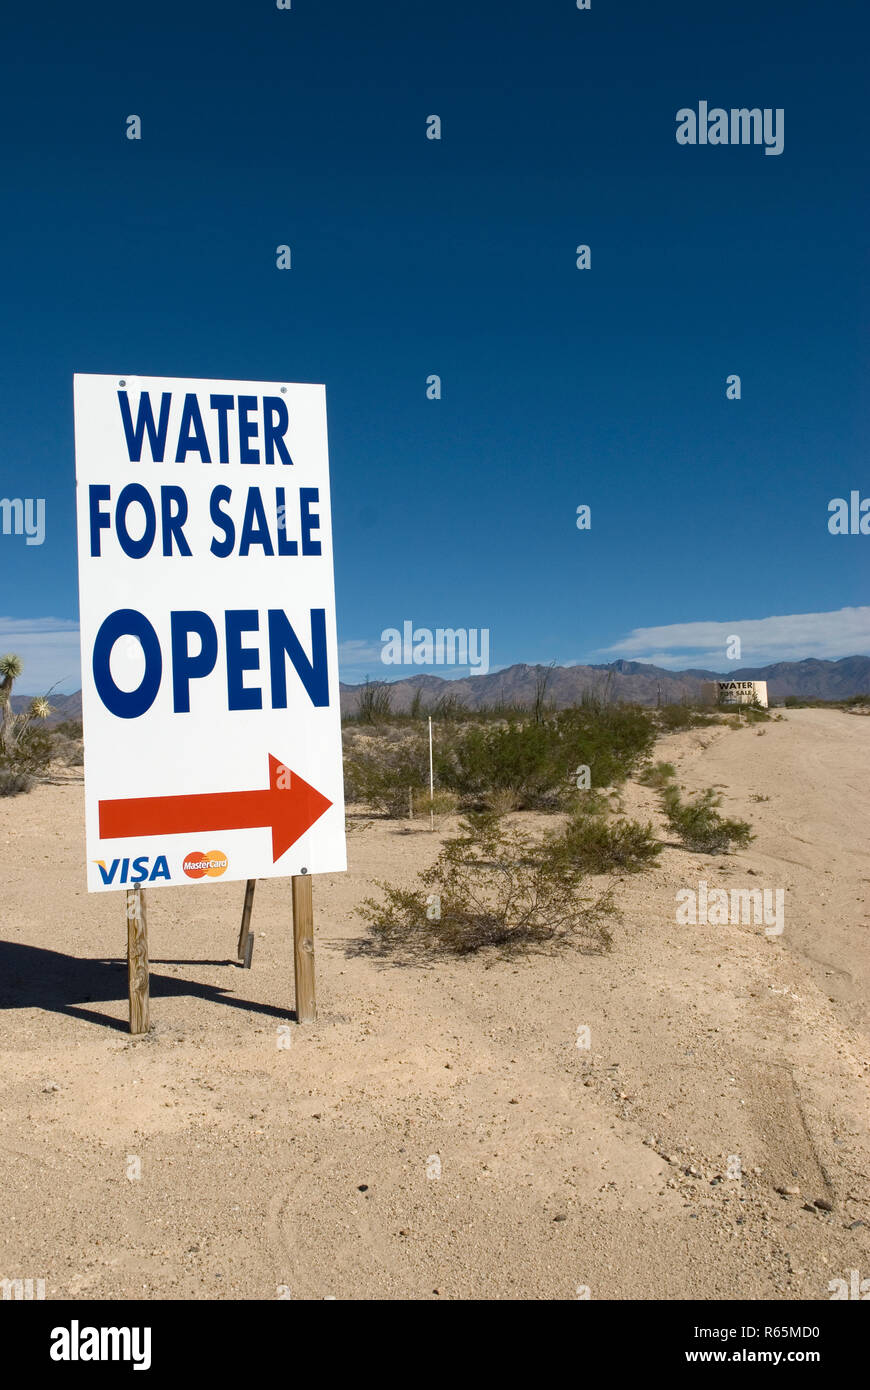 Wasser für den Verkauf in der Wüste von Arizona, USA. Konzept der Durst oder Dehydratation. Stockfoto